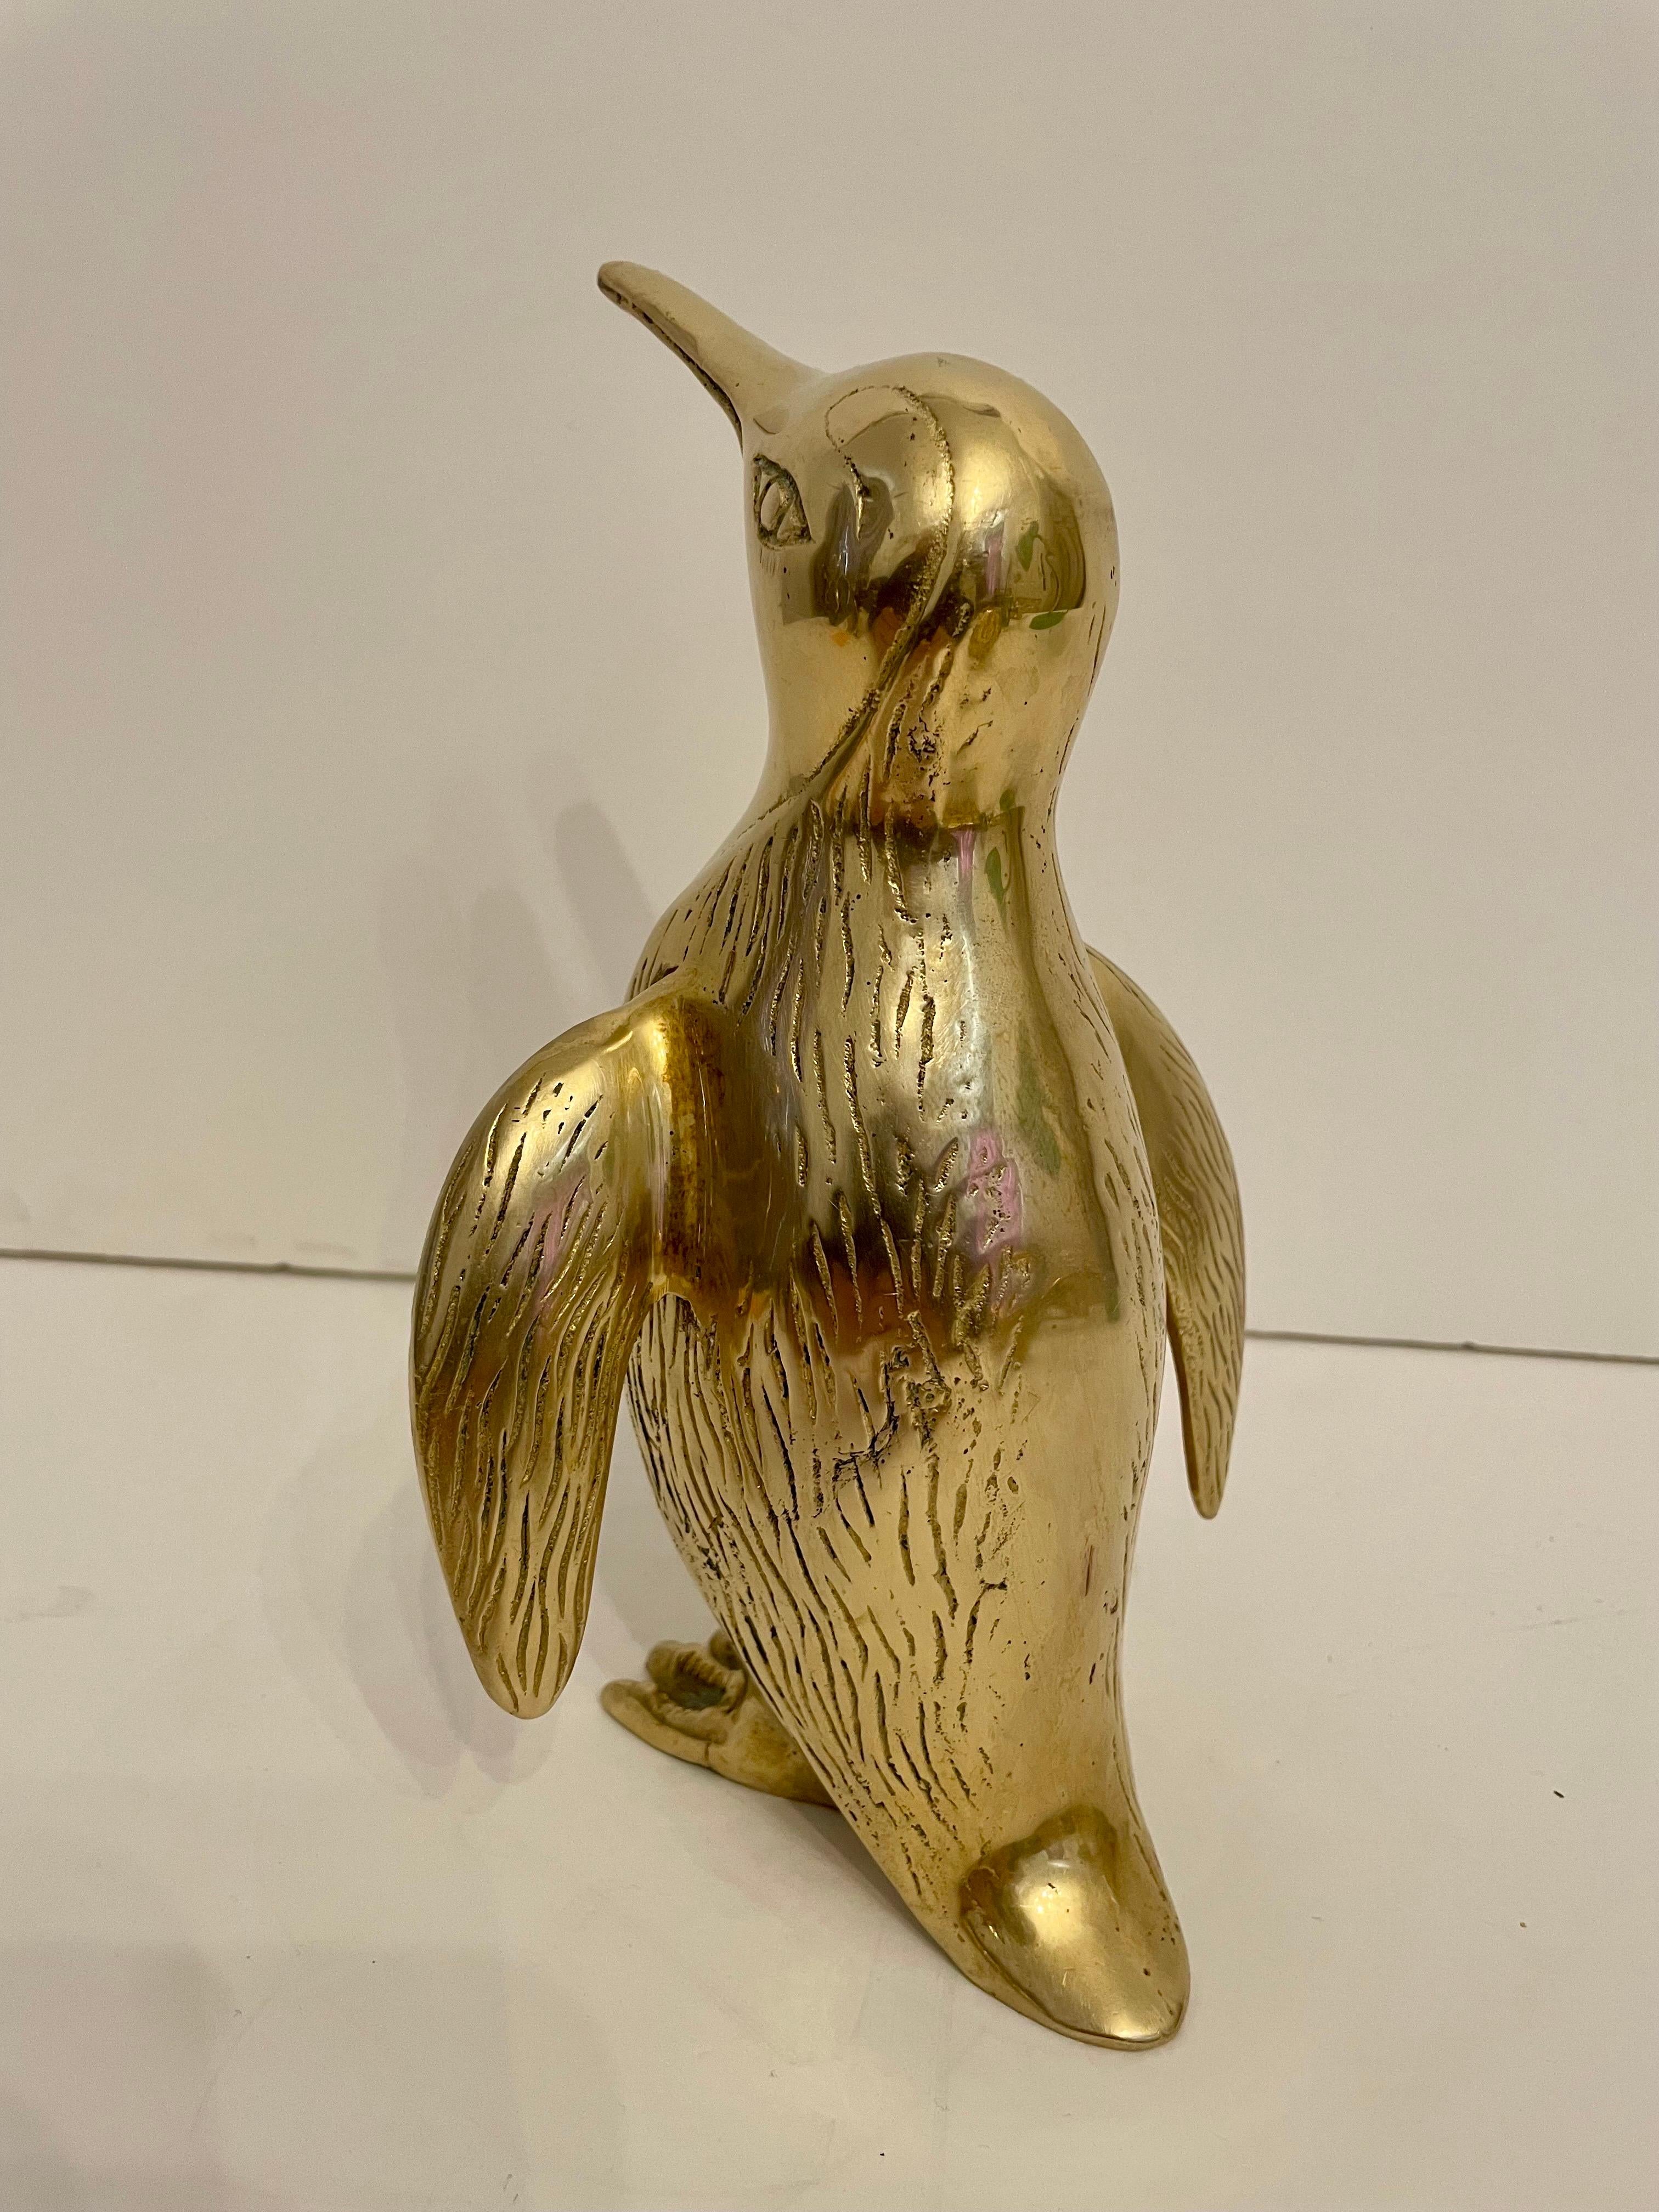 Vintage Hollywood Regency brass Penguin sculpture. Nicely detailed. Hand polished.